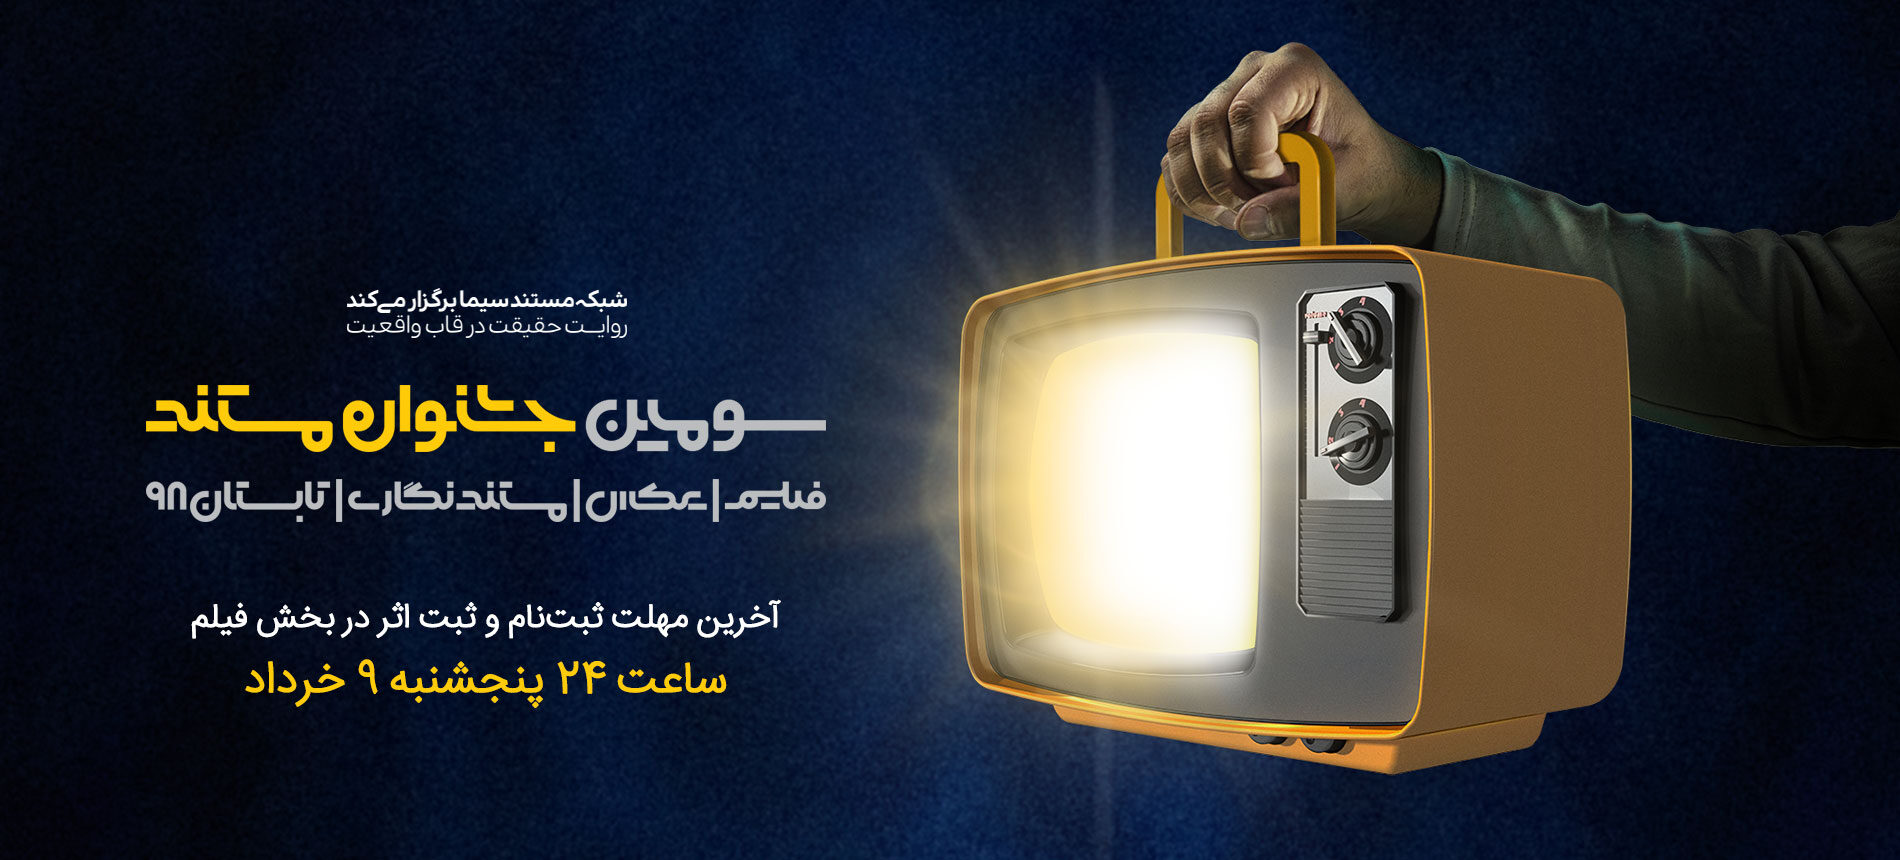 ساعت 12 امشب (9 خرداد)،آخرین فرصت ثبت نام و ثبت اثر در بخش فیلم سومین جشنواره مستند